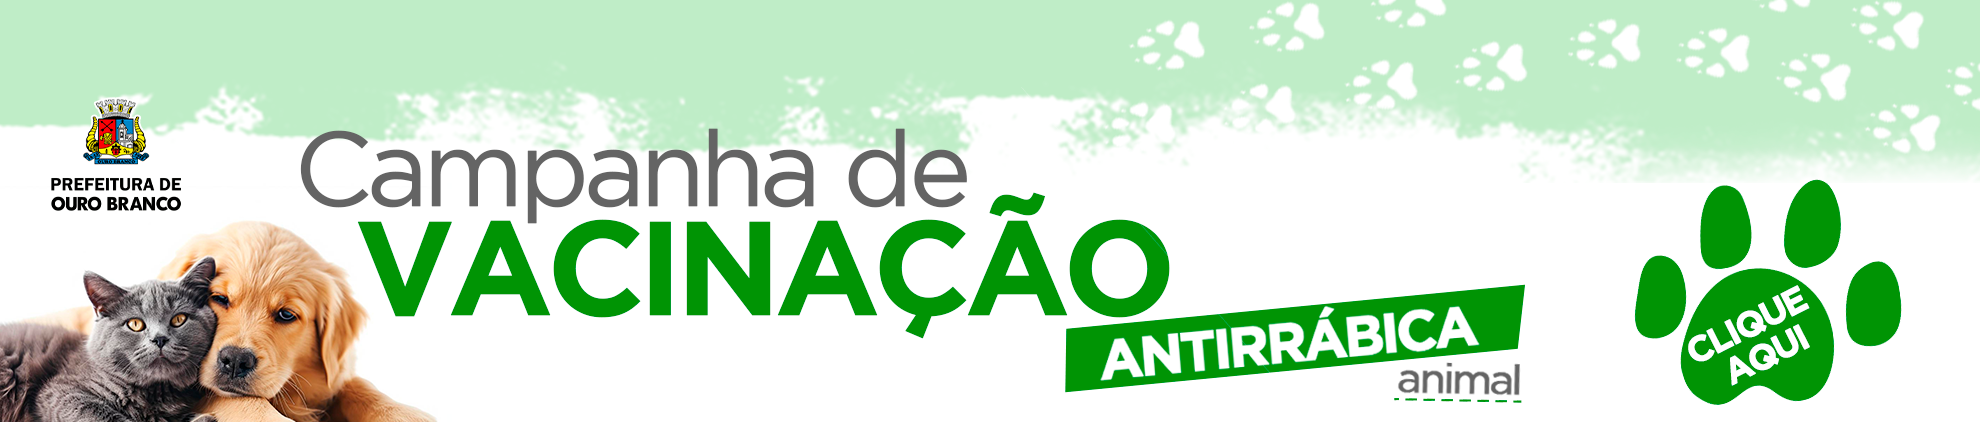 Banner Vacinao Antirrbica 